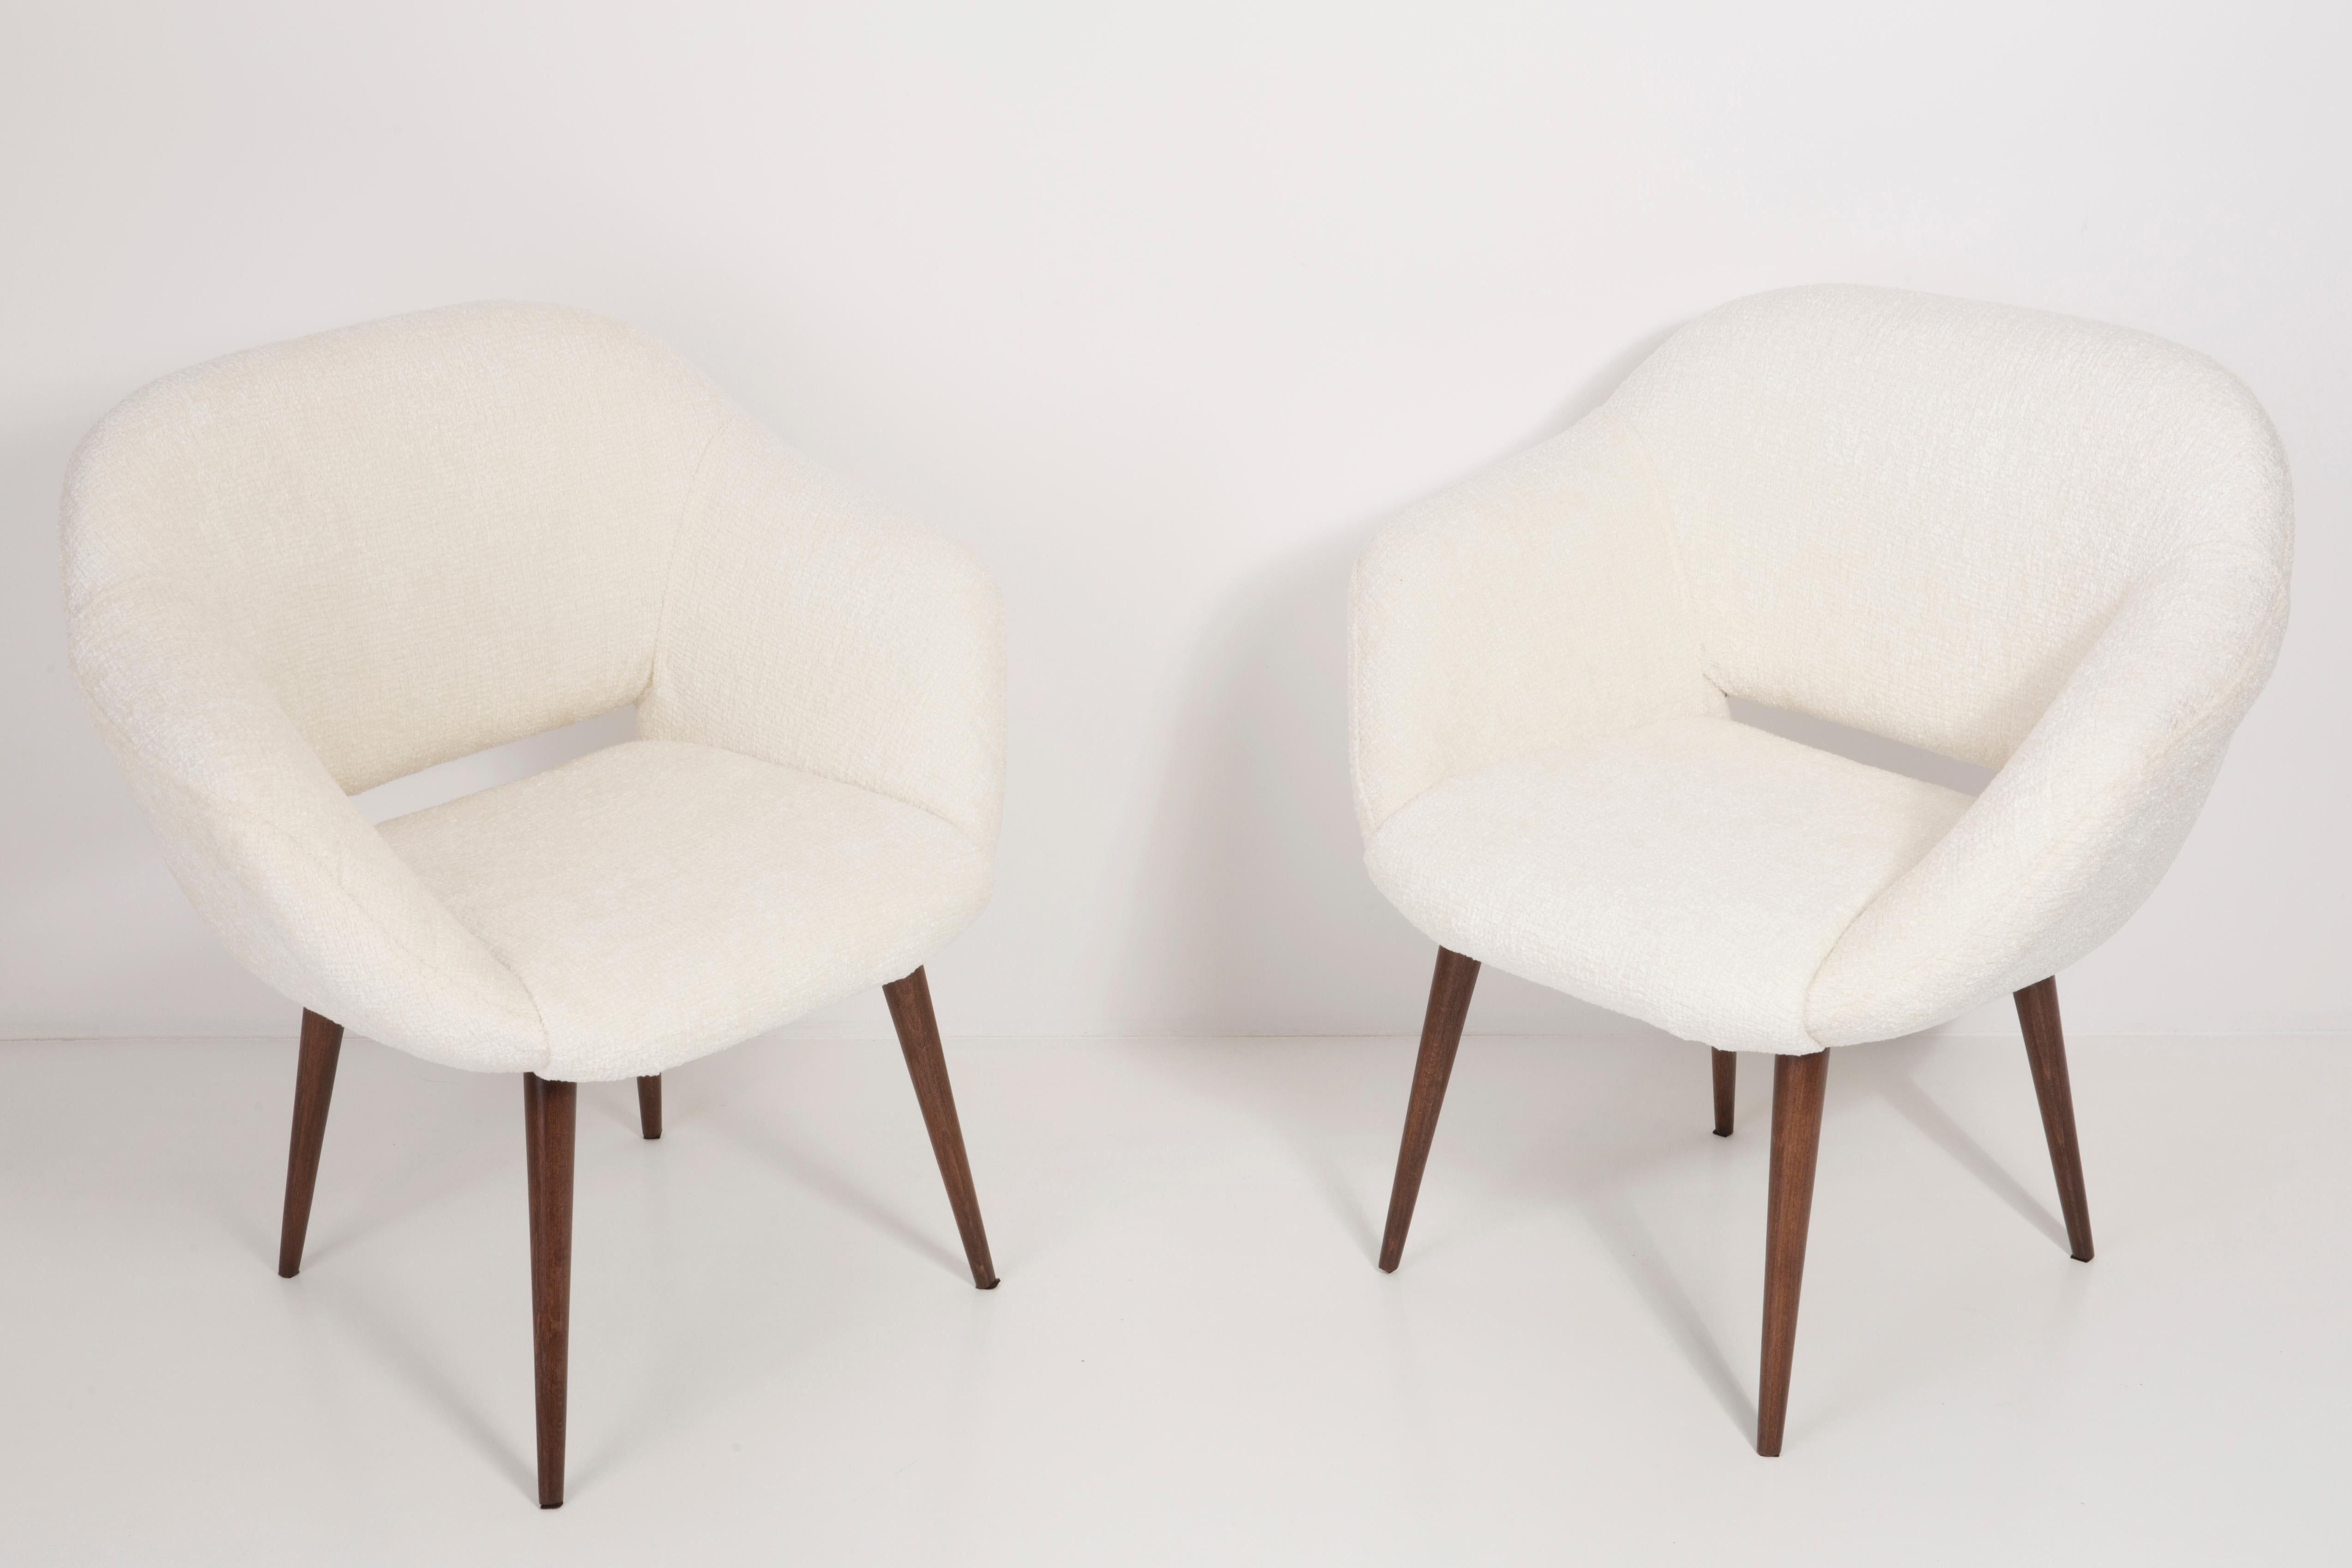 Deutsche Sessel, hergestellt in den 1960er Jahren in Berlin. Die Sessel sind nach einer gründlichen Renovierung gepolstert und getischlert. Der Holzrahmen wird gründlich gereinigt und mit einem seidenmatten Lack in der Farbe einer Nuss überzogen.